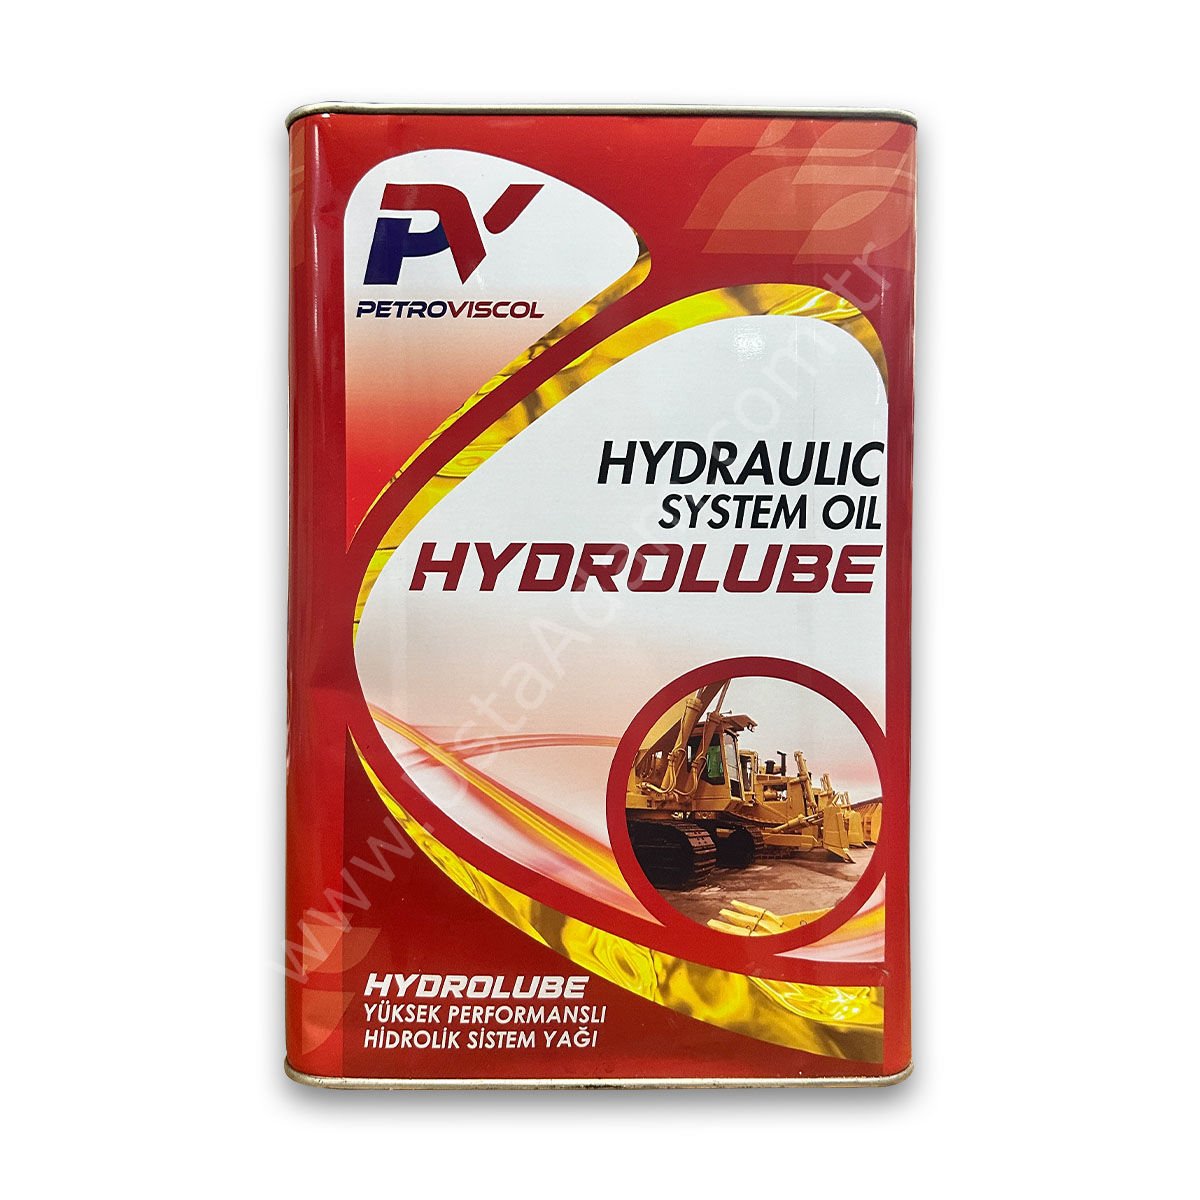 Petroviscol HYDROLUBE 32 hidrolik sistem yağı 16 LT